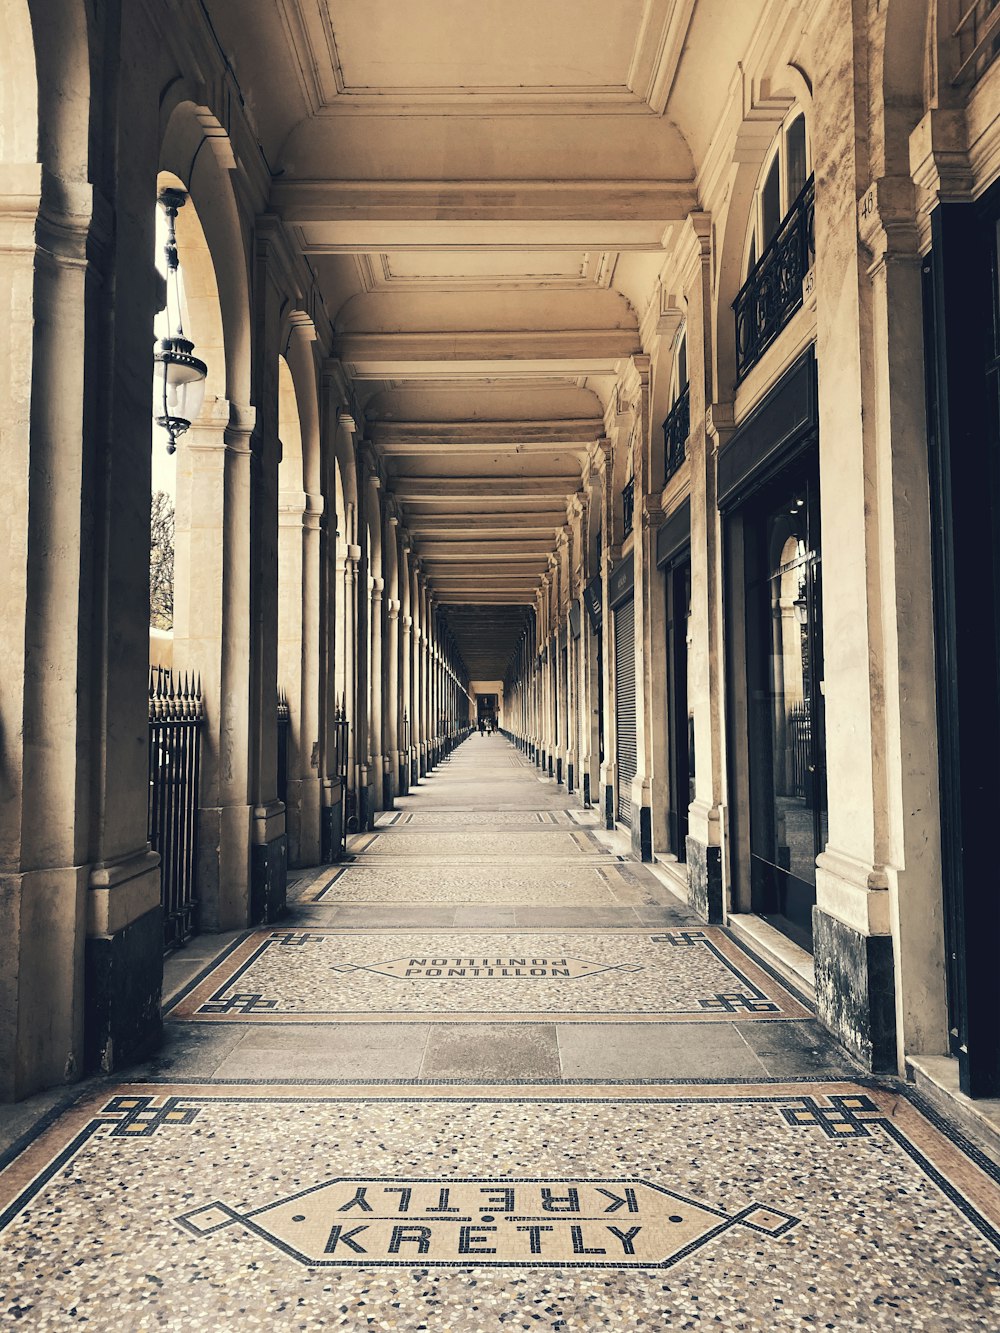 empty hallway between columns